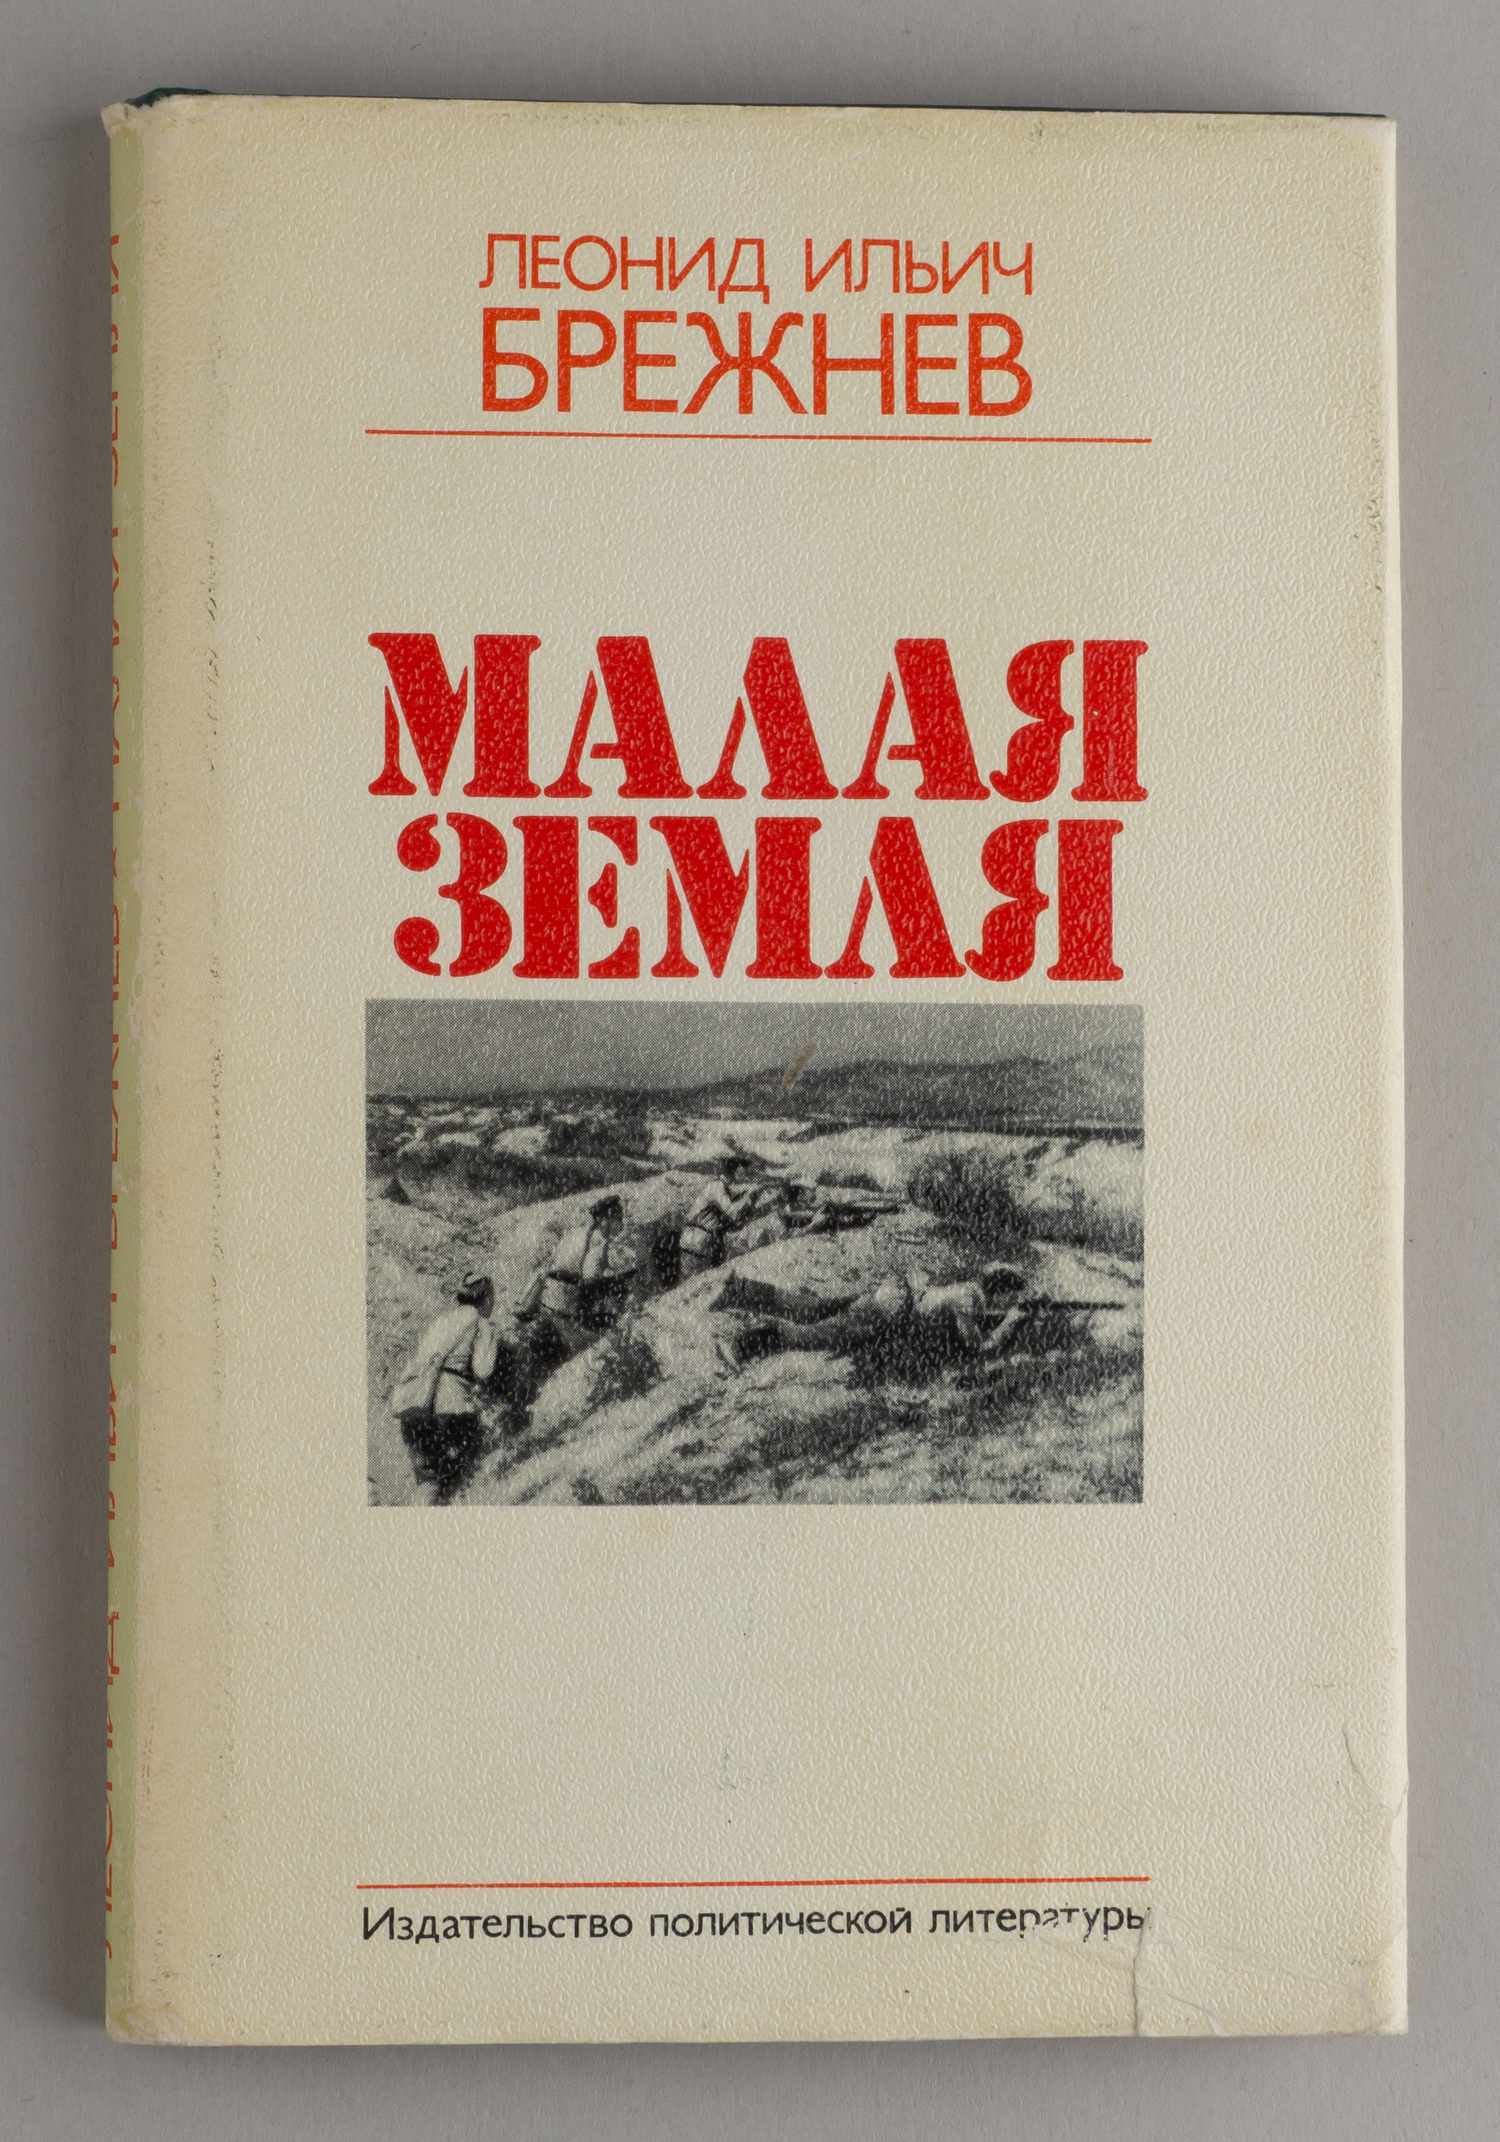 Брежнев Л.И. Малая земля (М., 1978).